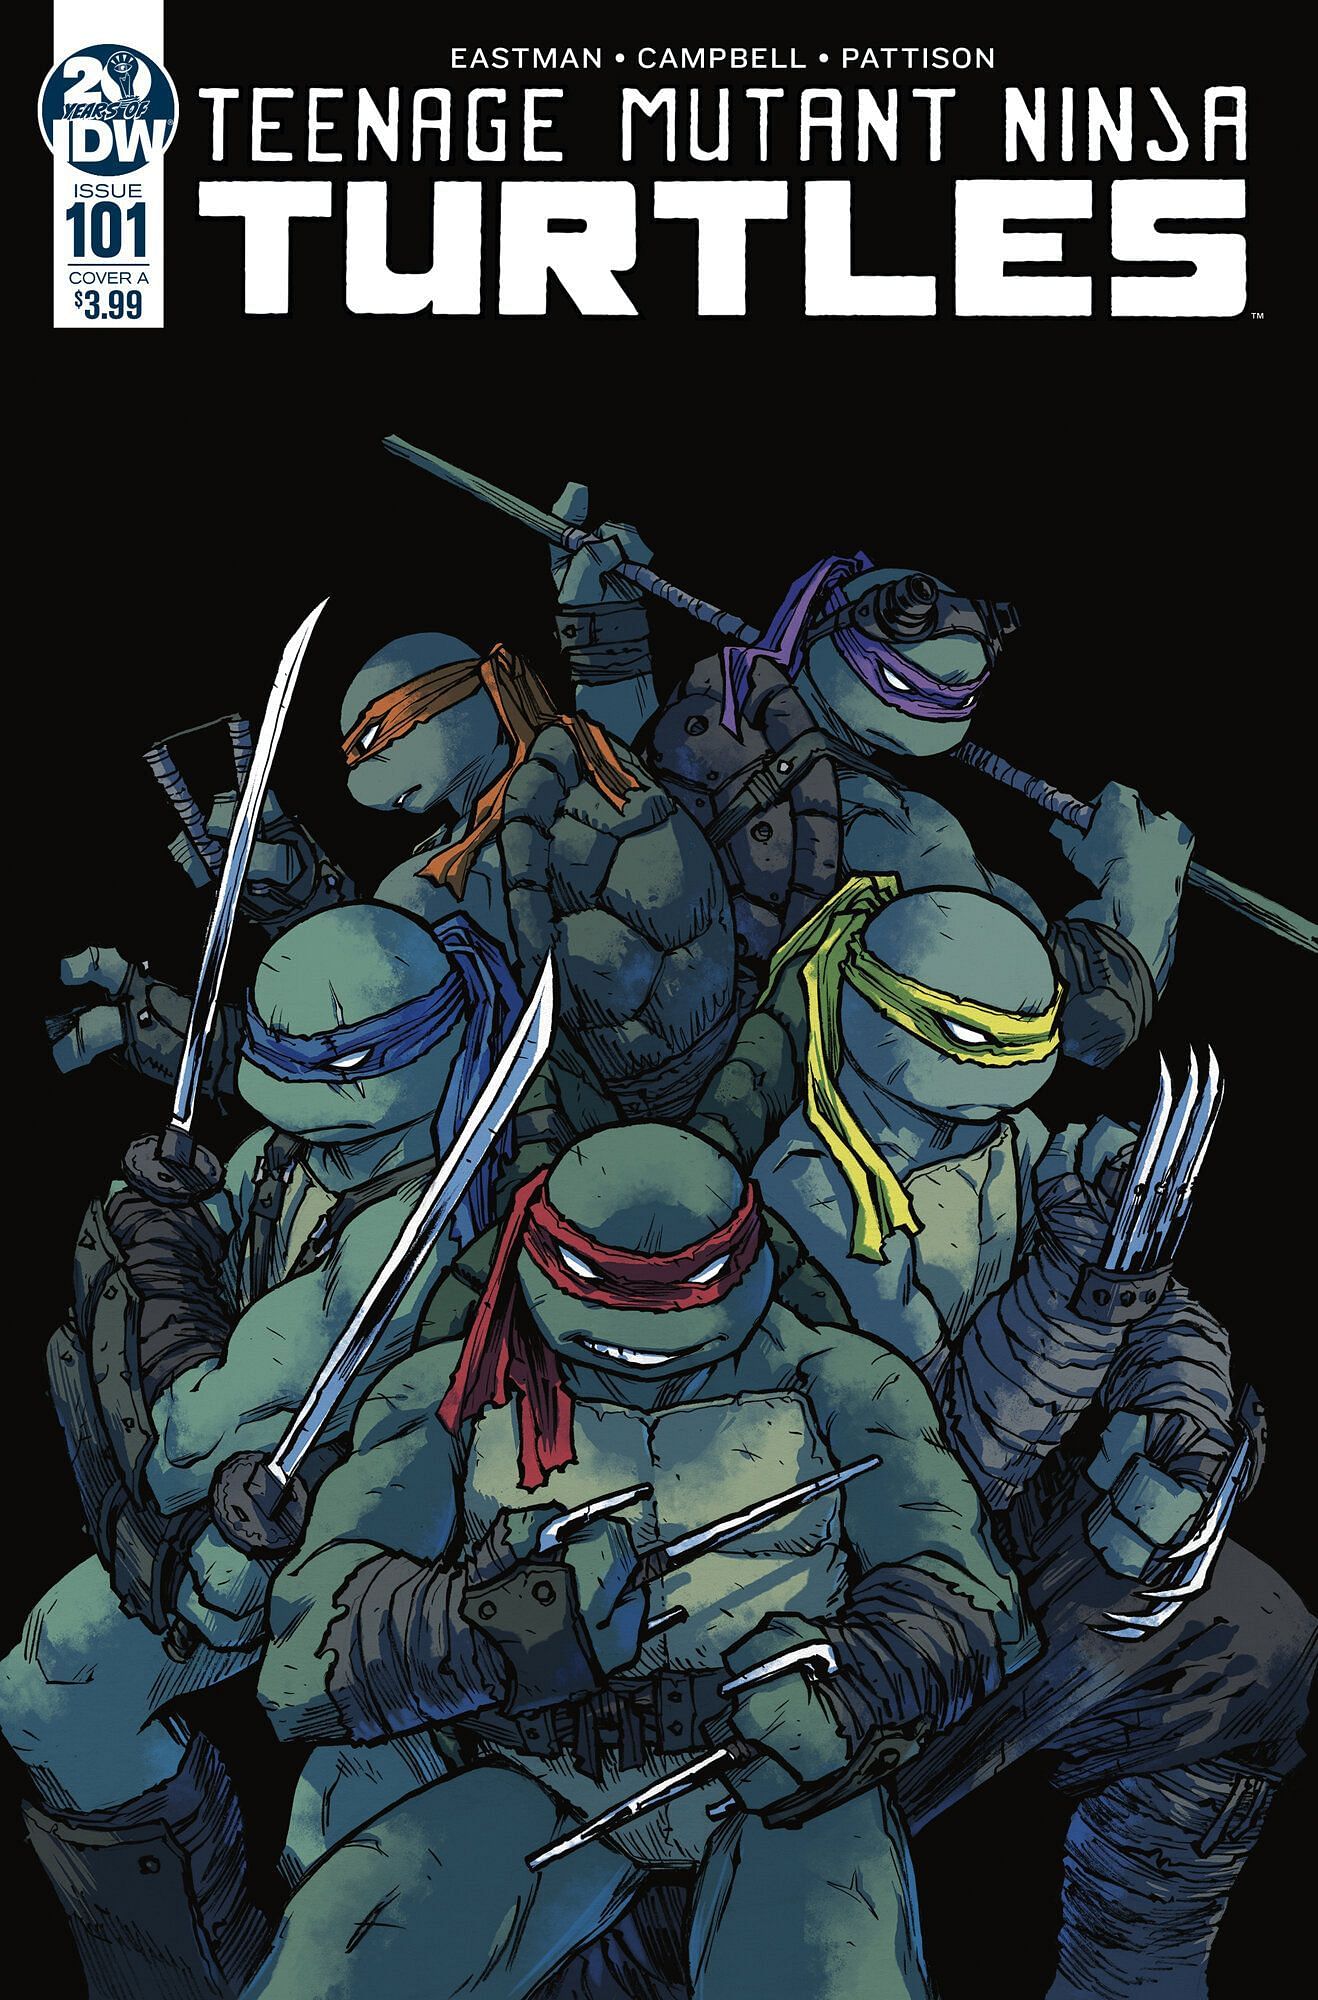 Teenage Mutant Ninja Turtles comic cover (Image via Mirage Studios)